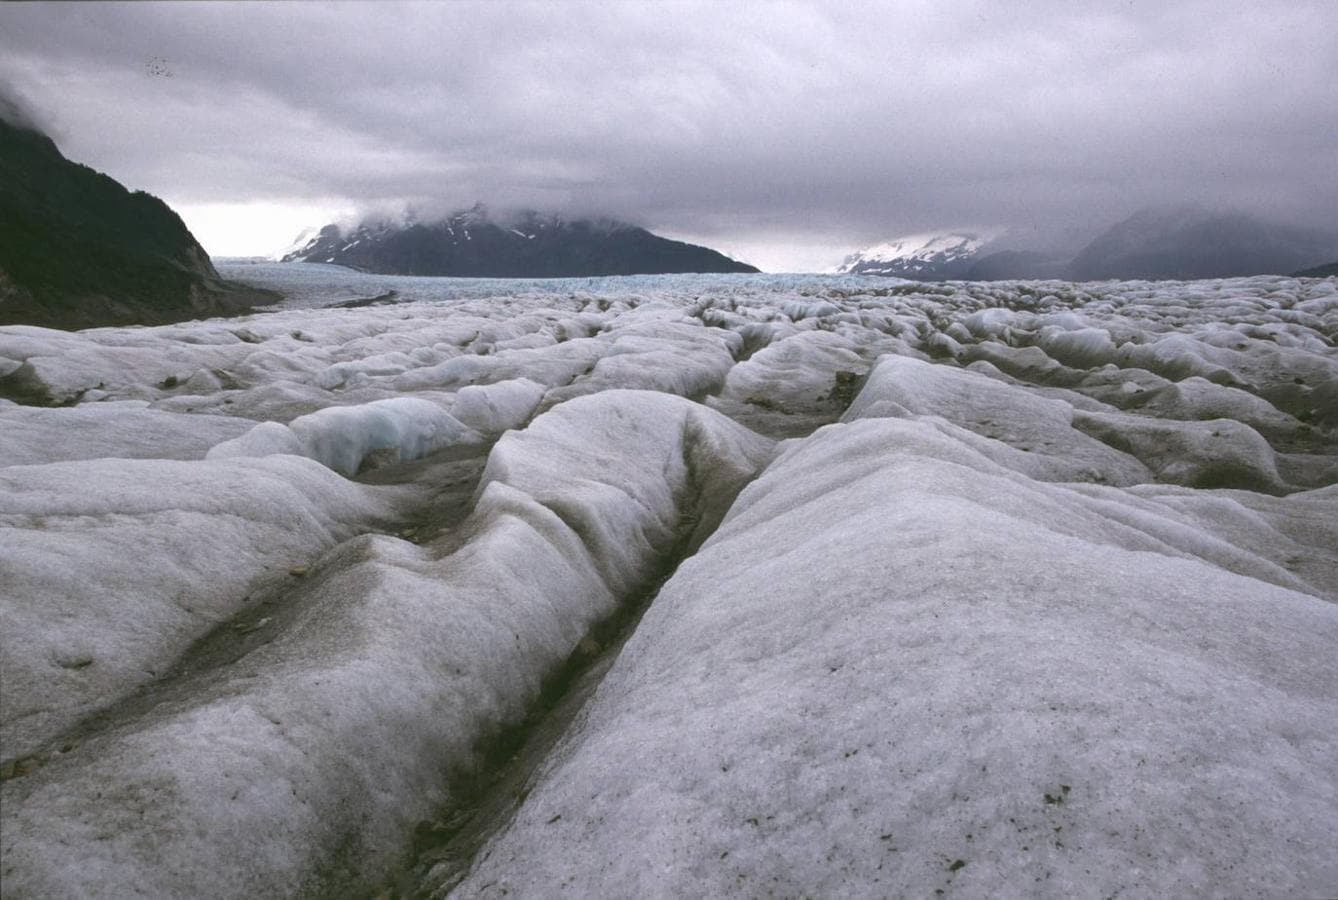 Glaciar Bering (Alaska): Este glaciar localizado en el estado estadounidense de Alaska se encuentra en el Parque Nacional Elias. Pero al igual que sucede con la gran mayoría de grandes glaciares, las temperaturas cálidas y los cambios en las precipitaciones están haciendo que este glaciar adelgace año tras año aumentando también la frecuencia de los terremotos en la región. ¿La razón? Además de que este glaciar es resultado de la colisión de las placas tectónicas del Pacífico y de América del Norte, su reducción hace que la presión del hielo sobre ellas disminuya permitiendo que las fallas se muevan más libremente y provocando así los terremotos.